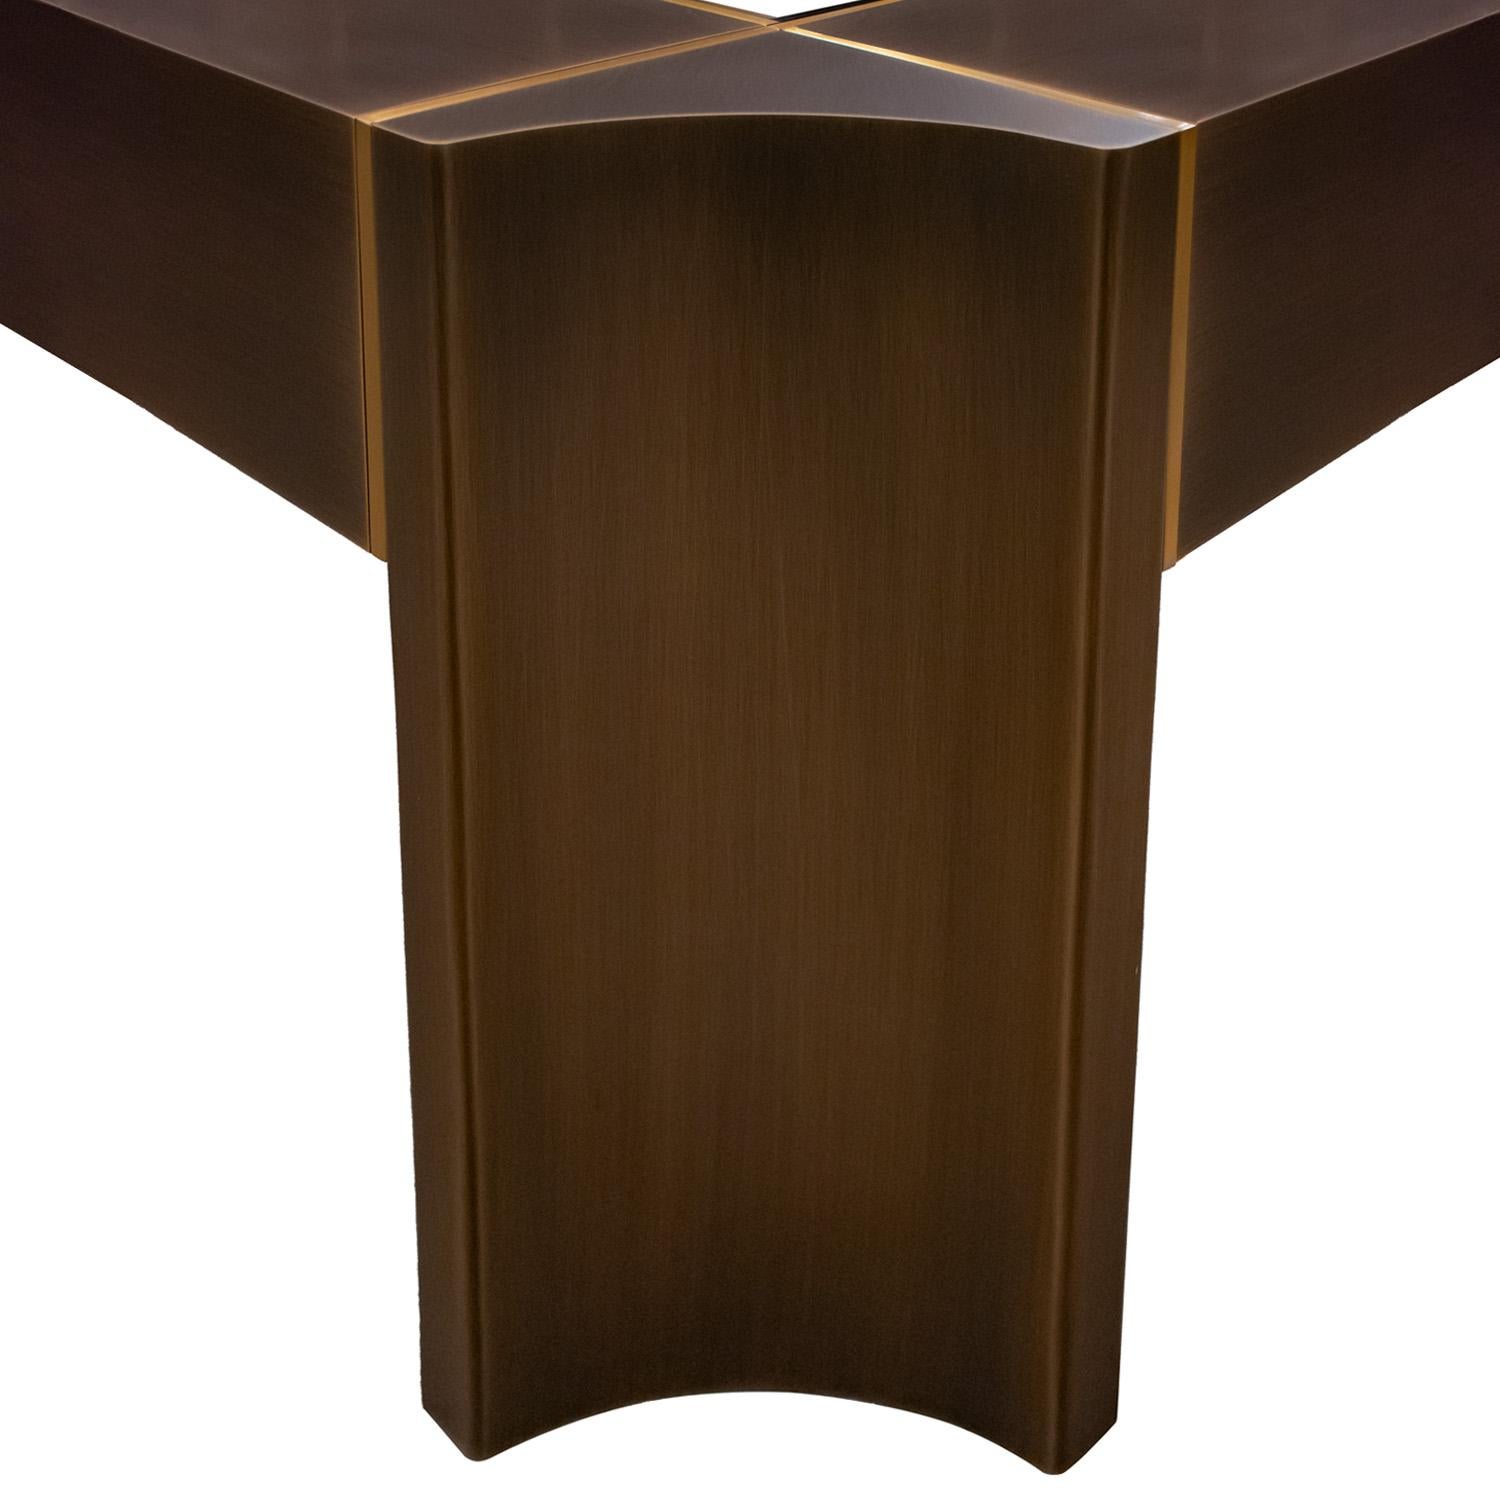 Fin du 20e siècle Exceptionnelle table basse Art Moderne de Karl Springer en bronze satiné des années 1980